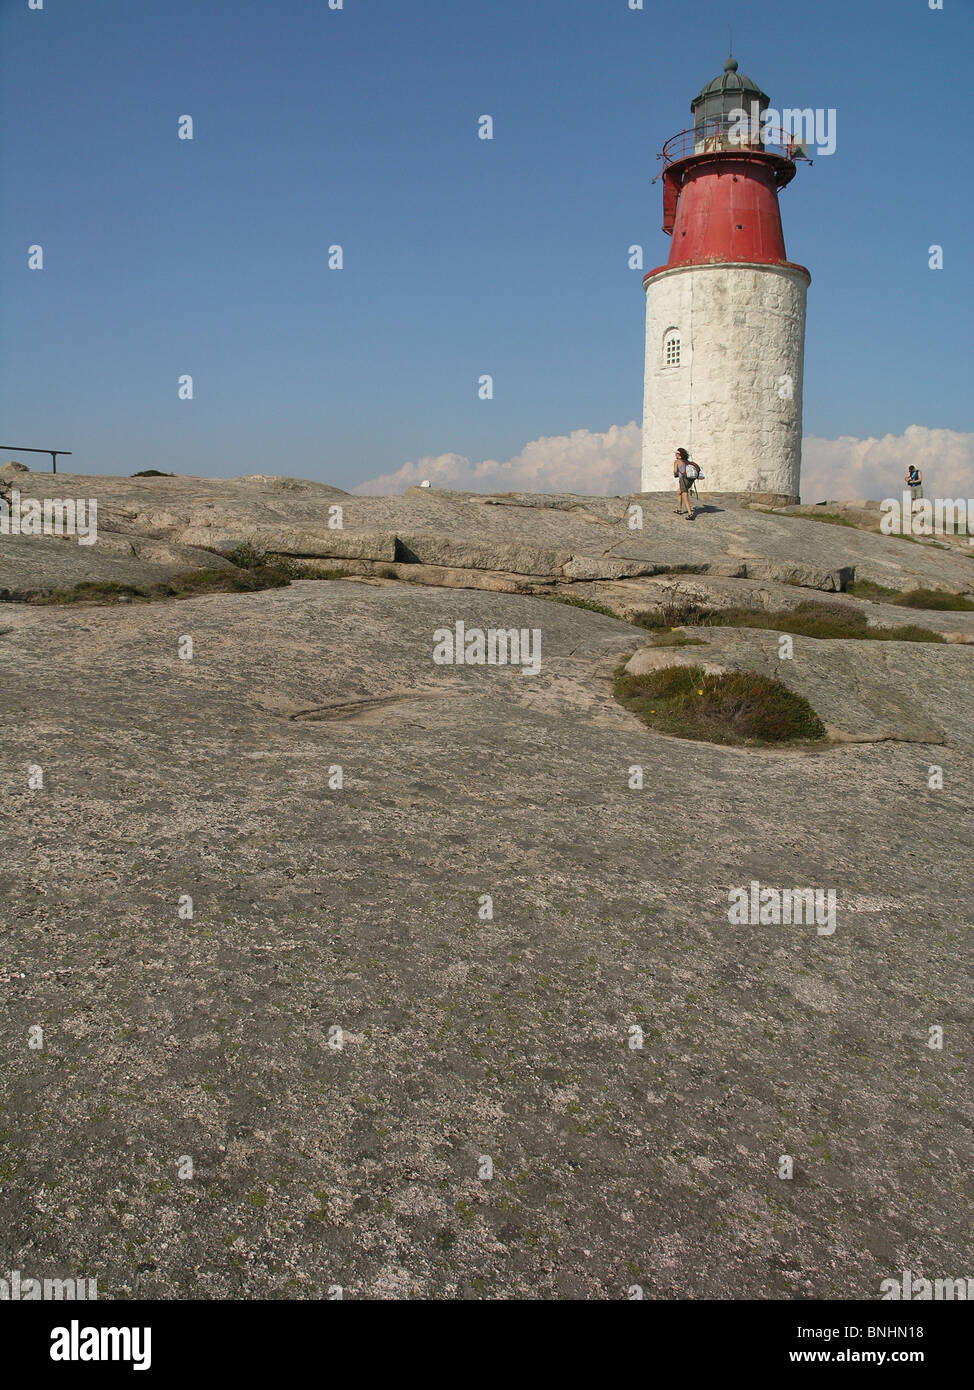 Sweden Hallö Bohuslän province lighthouse rock archipelago coast sea ocean landscape people Scandinavia Stock Photo